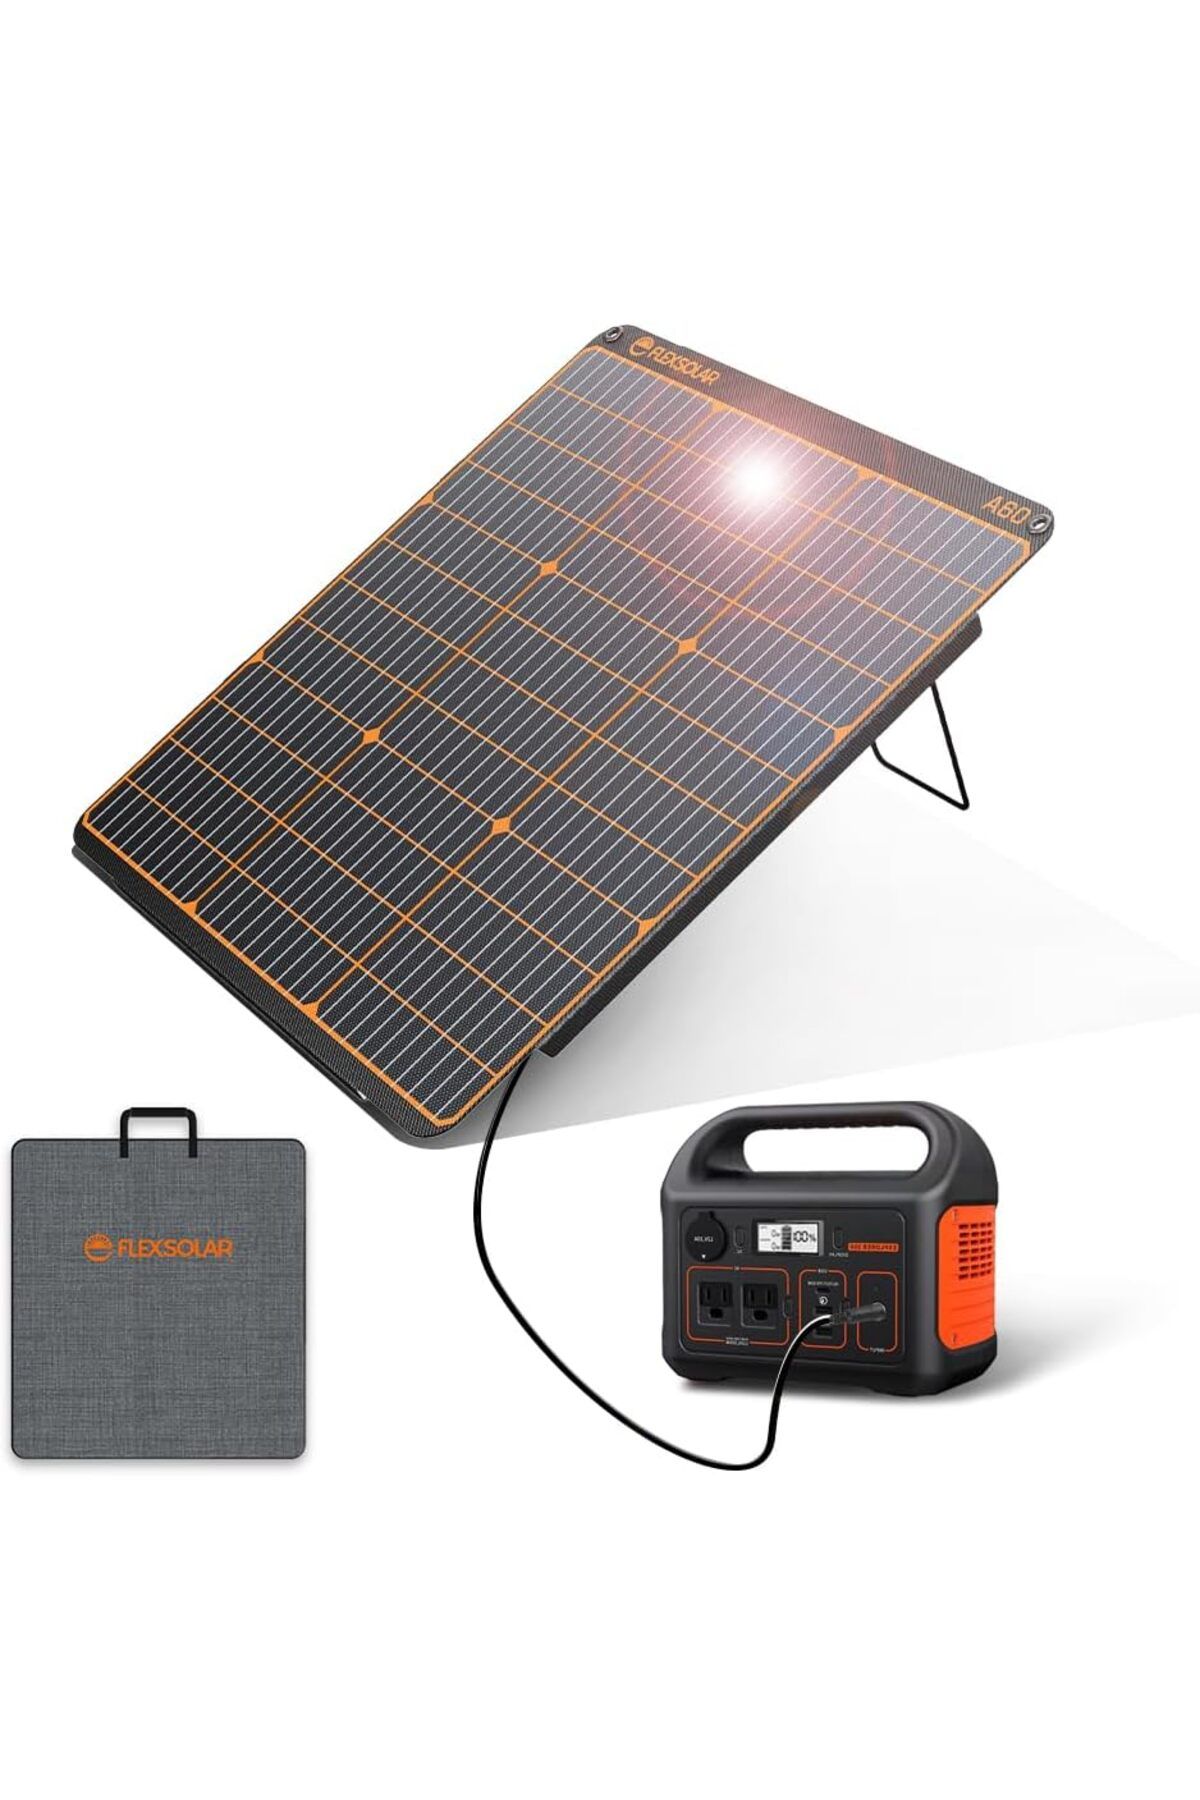 FlexSolar Taşınabilir 60W Güneş Paneli Solar Şarj Cihazı USB-C 45W QC 3.0 ve DC Çıkışlı, IP67, Monokristal